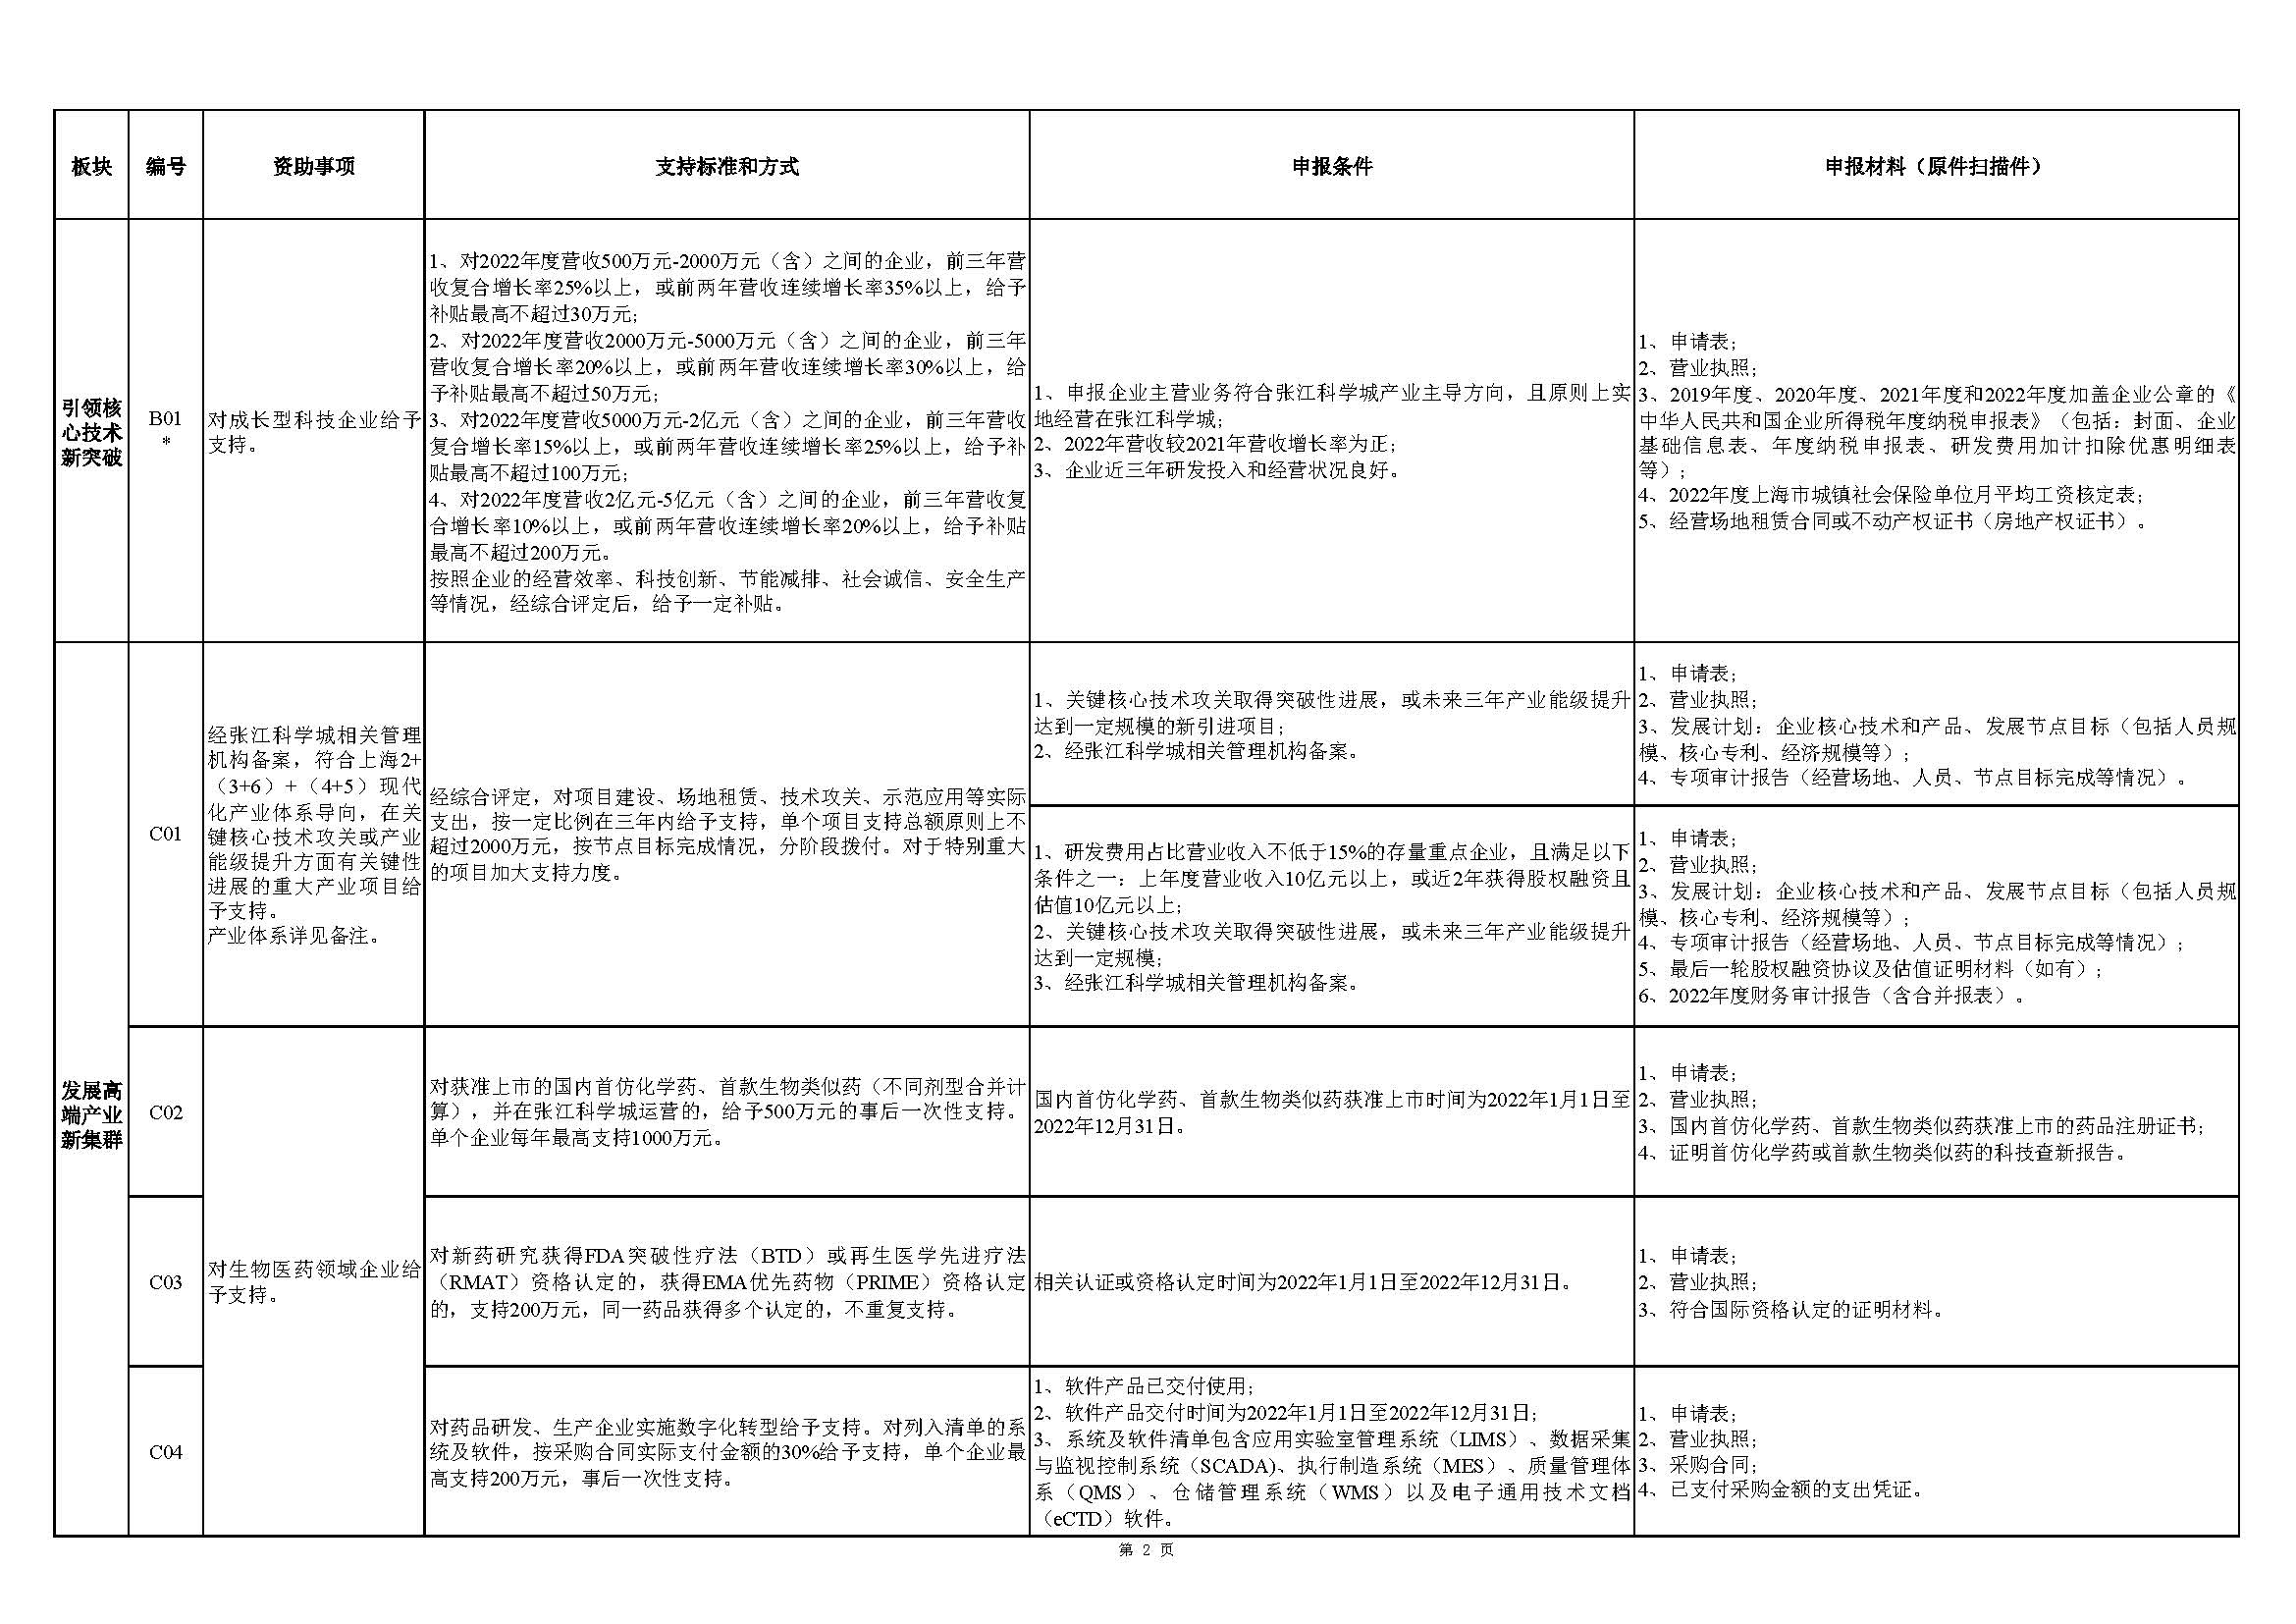 张江科学城专项发展资金申报指南_页面_2.jpg